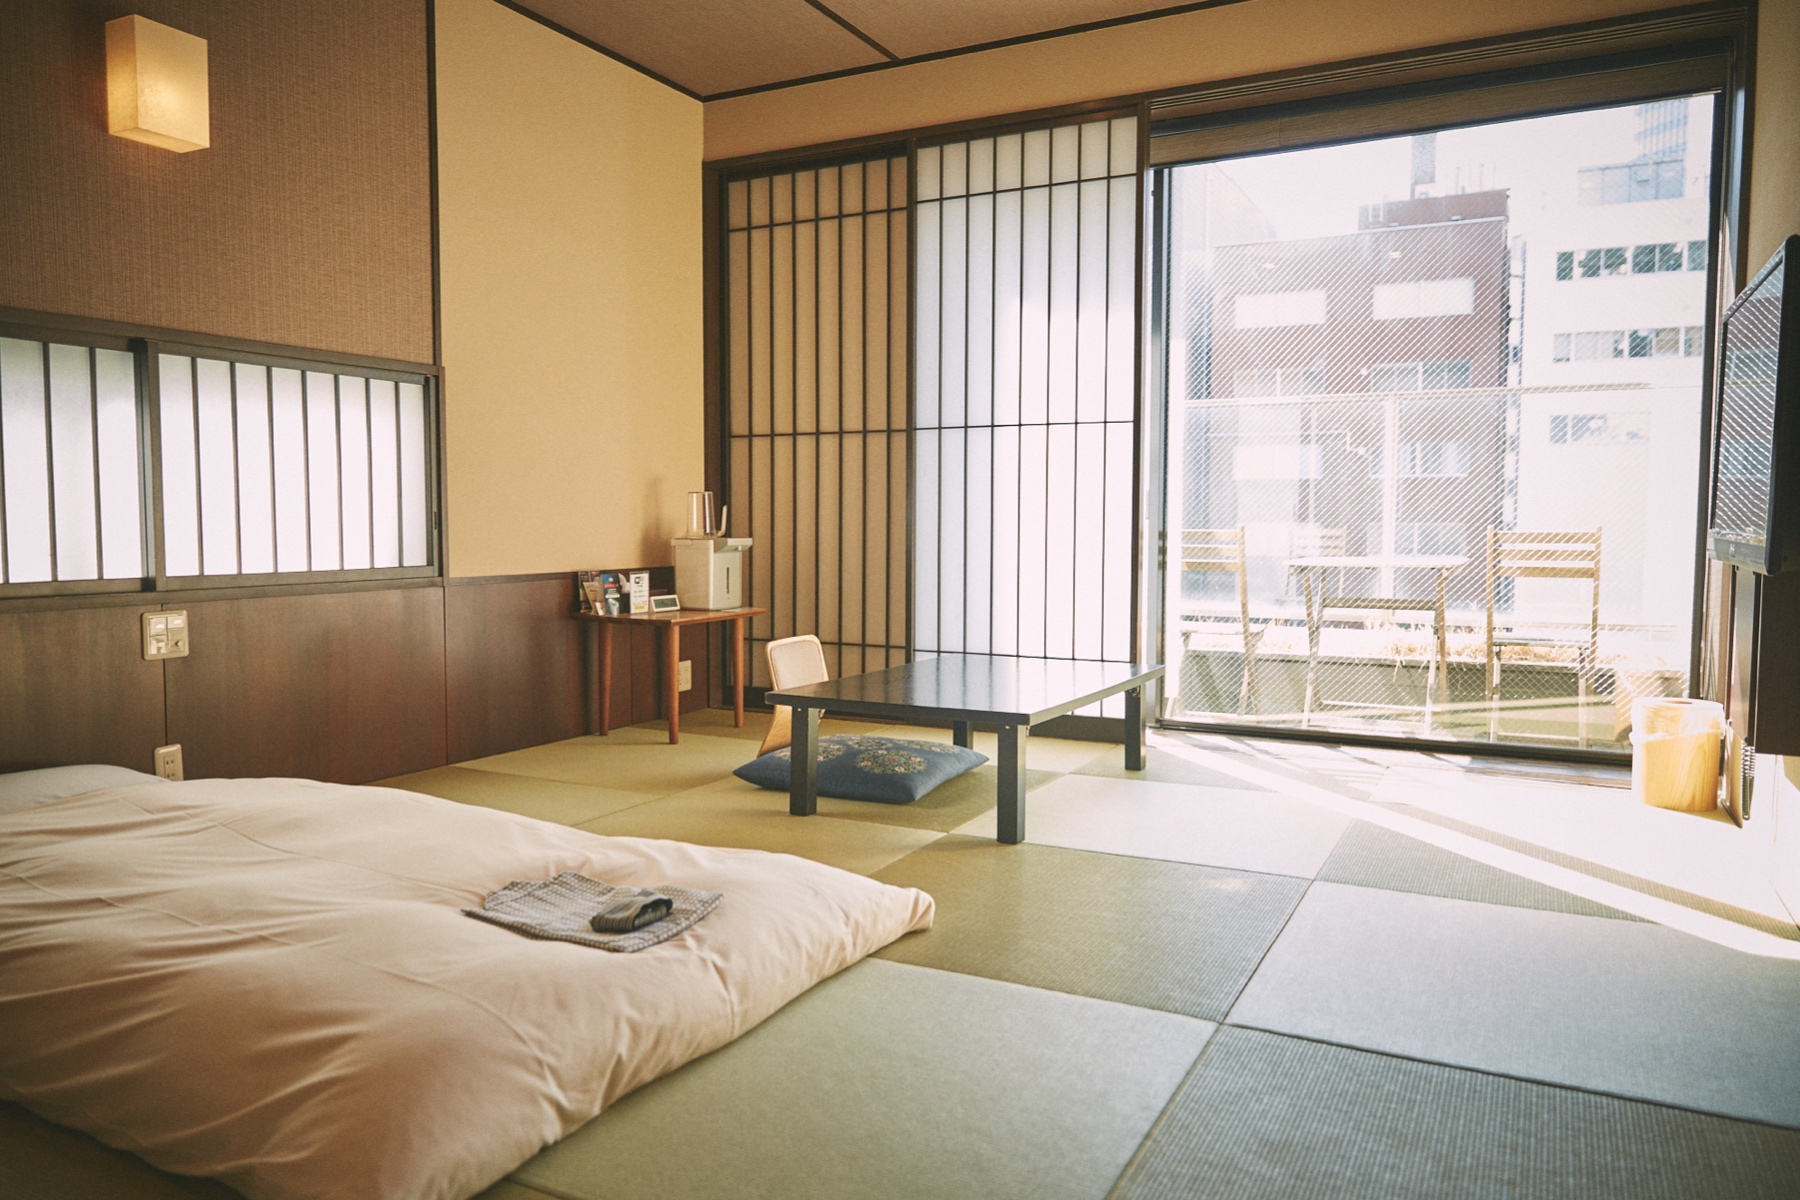 쇼류칸 객실의 현대적이고 전통적인 일본식 디자인